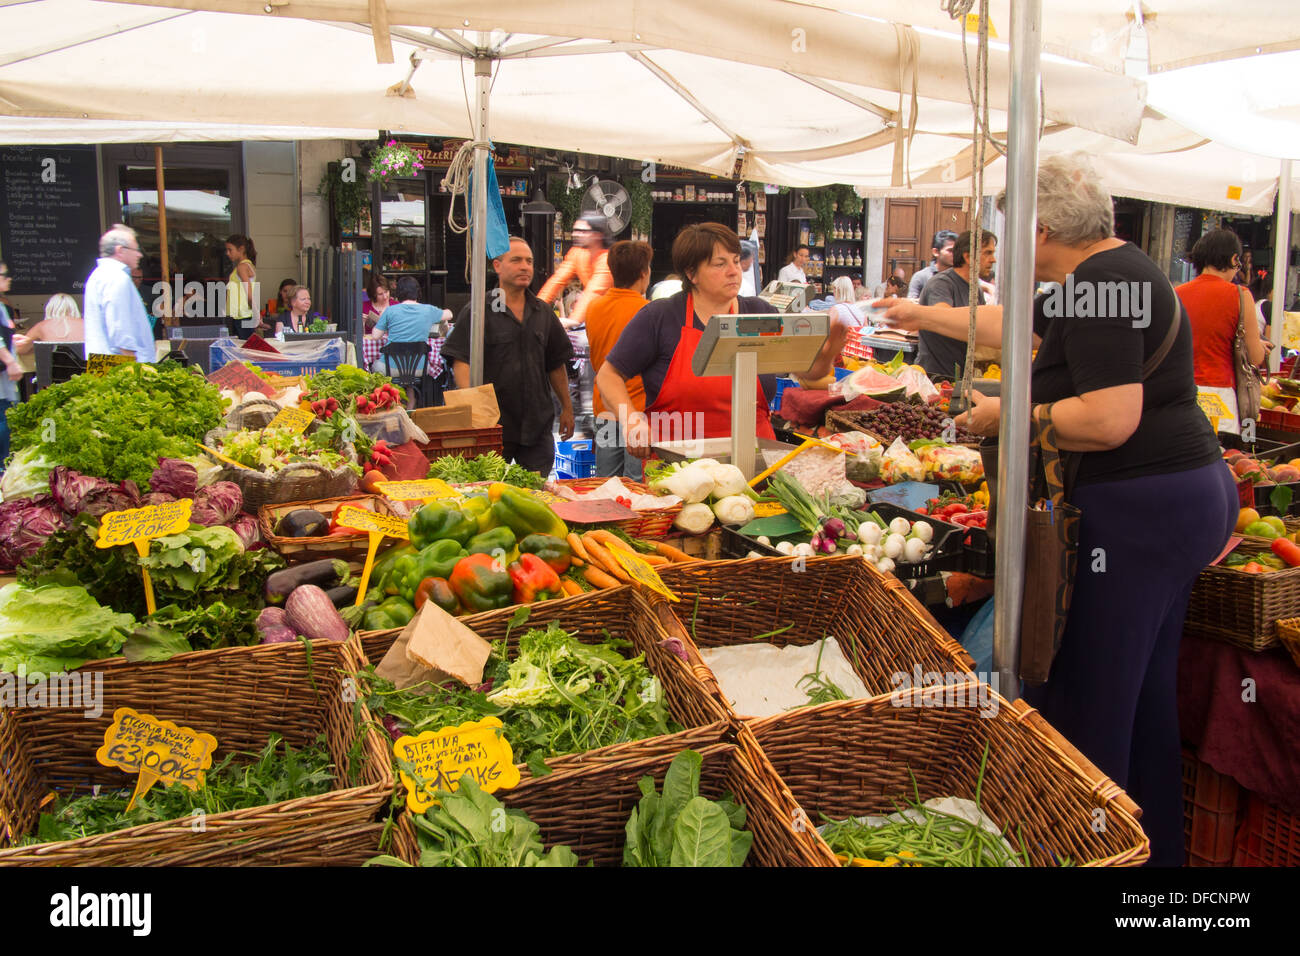 Market stall at piazza de Fiori, Rome, Lazio region, Italy Stock Photo